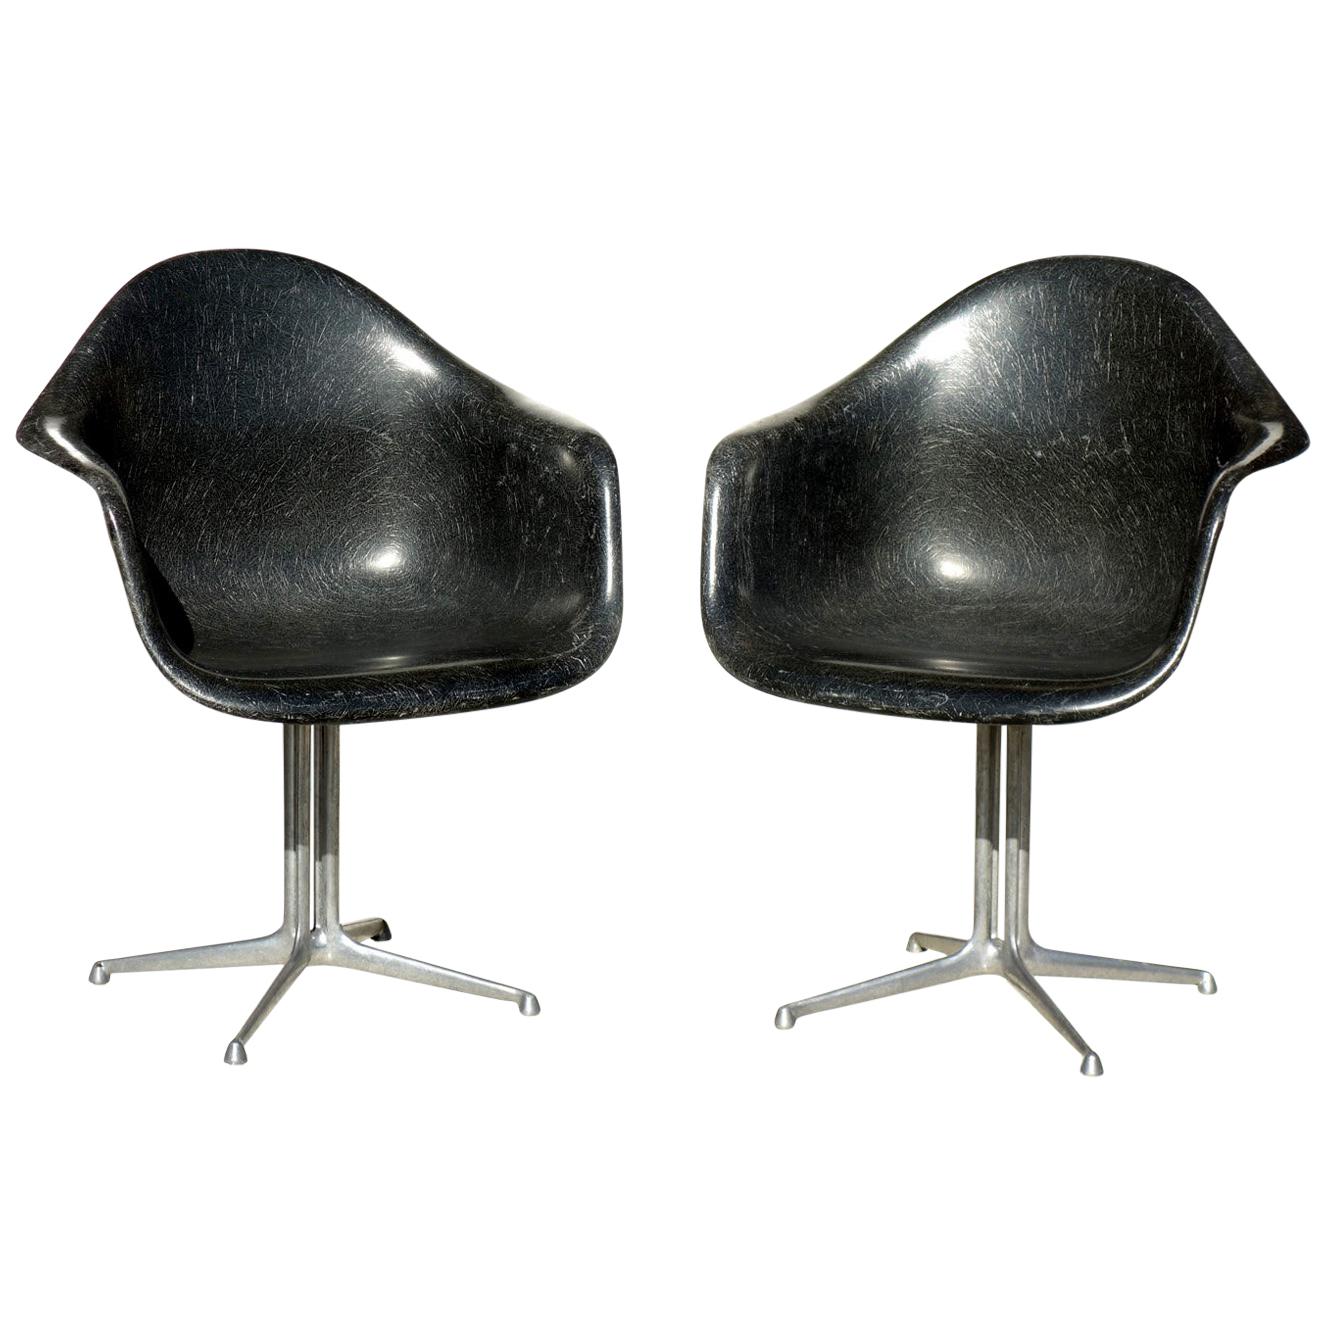 Chaise à deux coques en fibre de verre « La Fonda » de C. Eames par H. Miller, ère spatiale